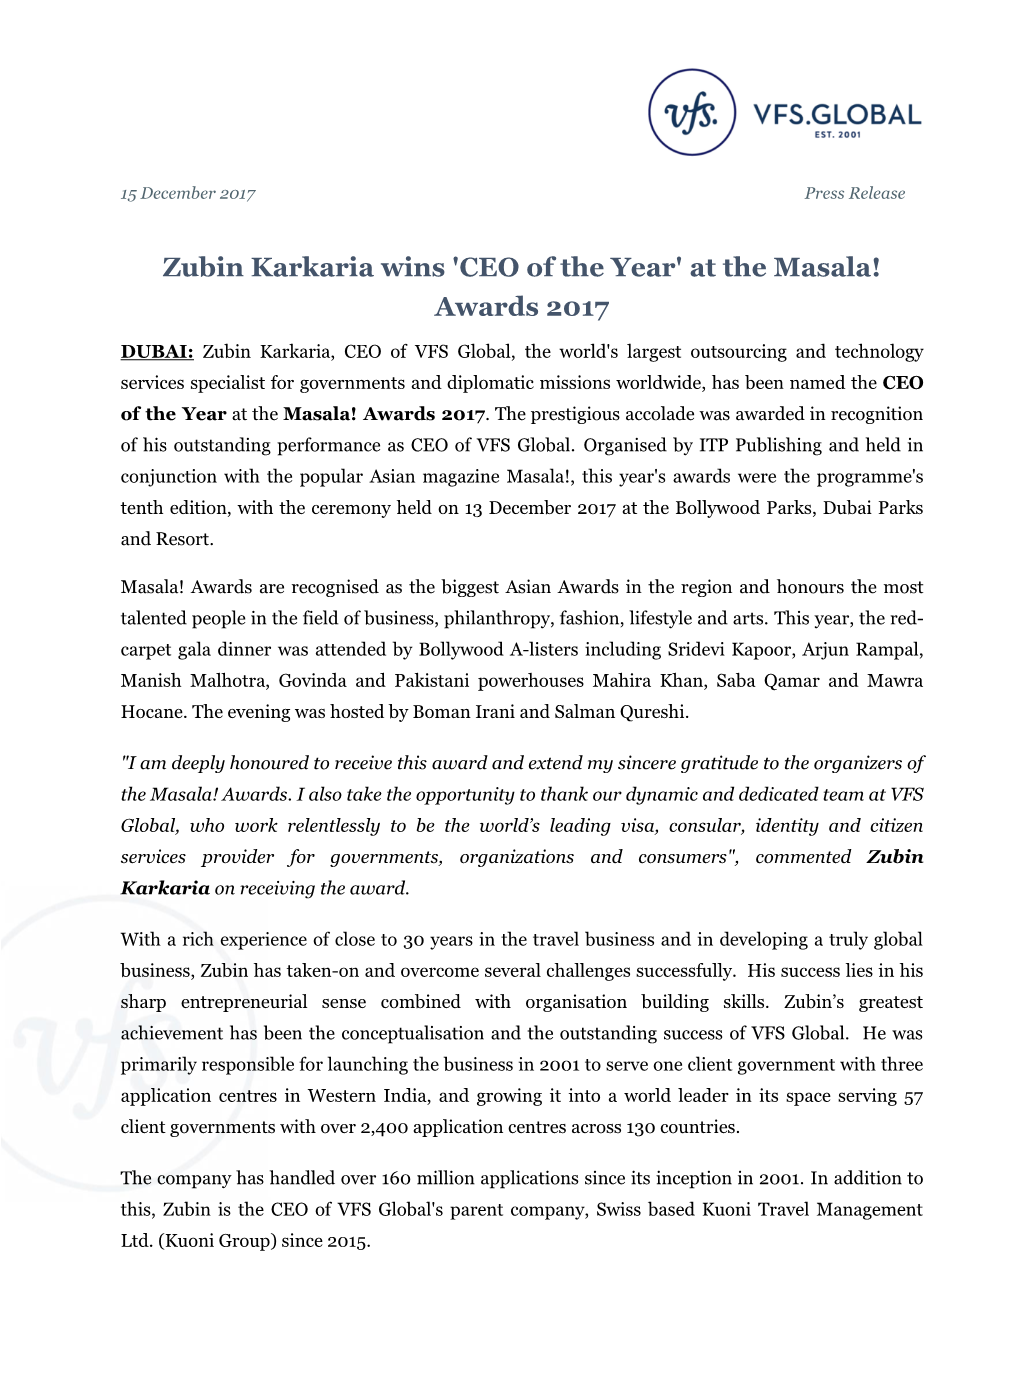 Zubin Karkaria Wins 'CEO of the Year' at the Masala! Awards 2017